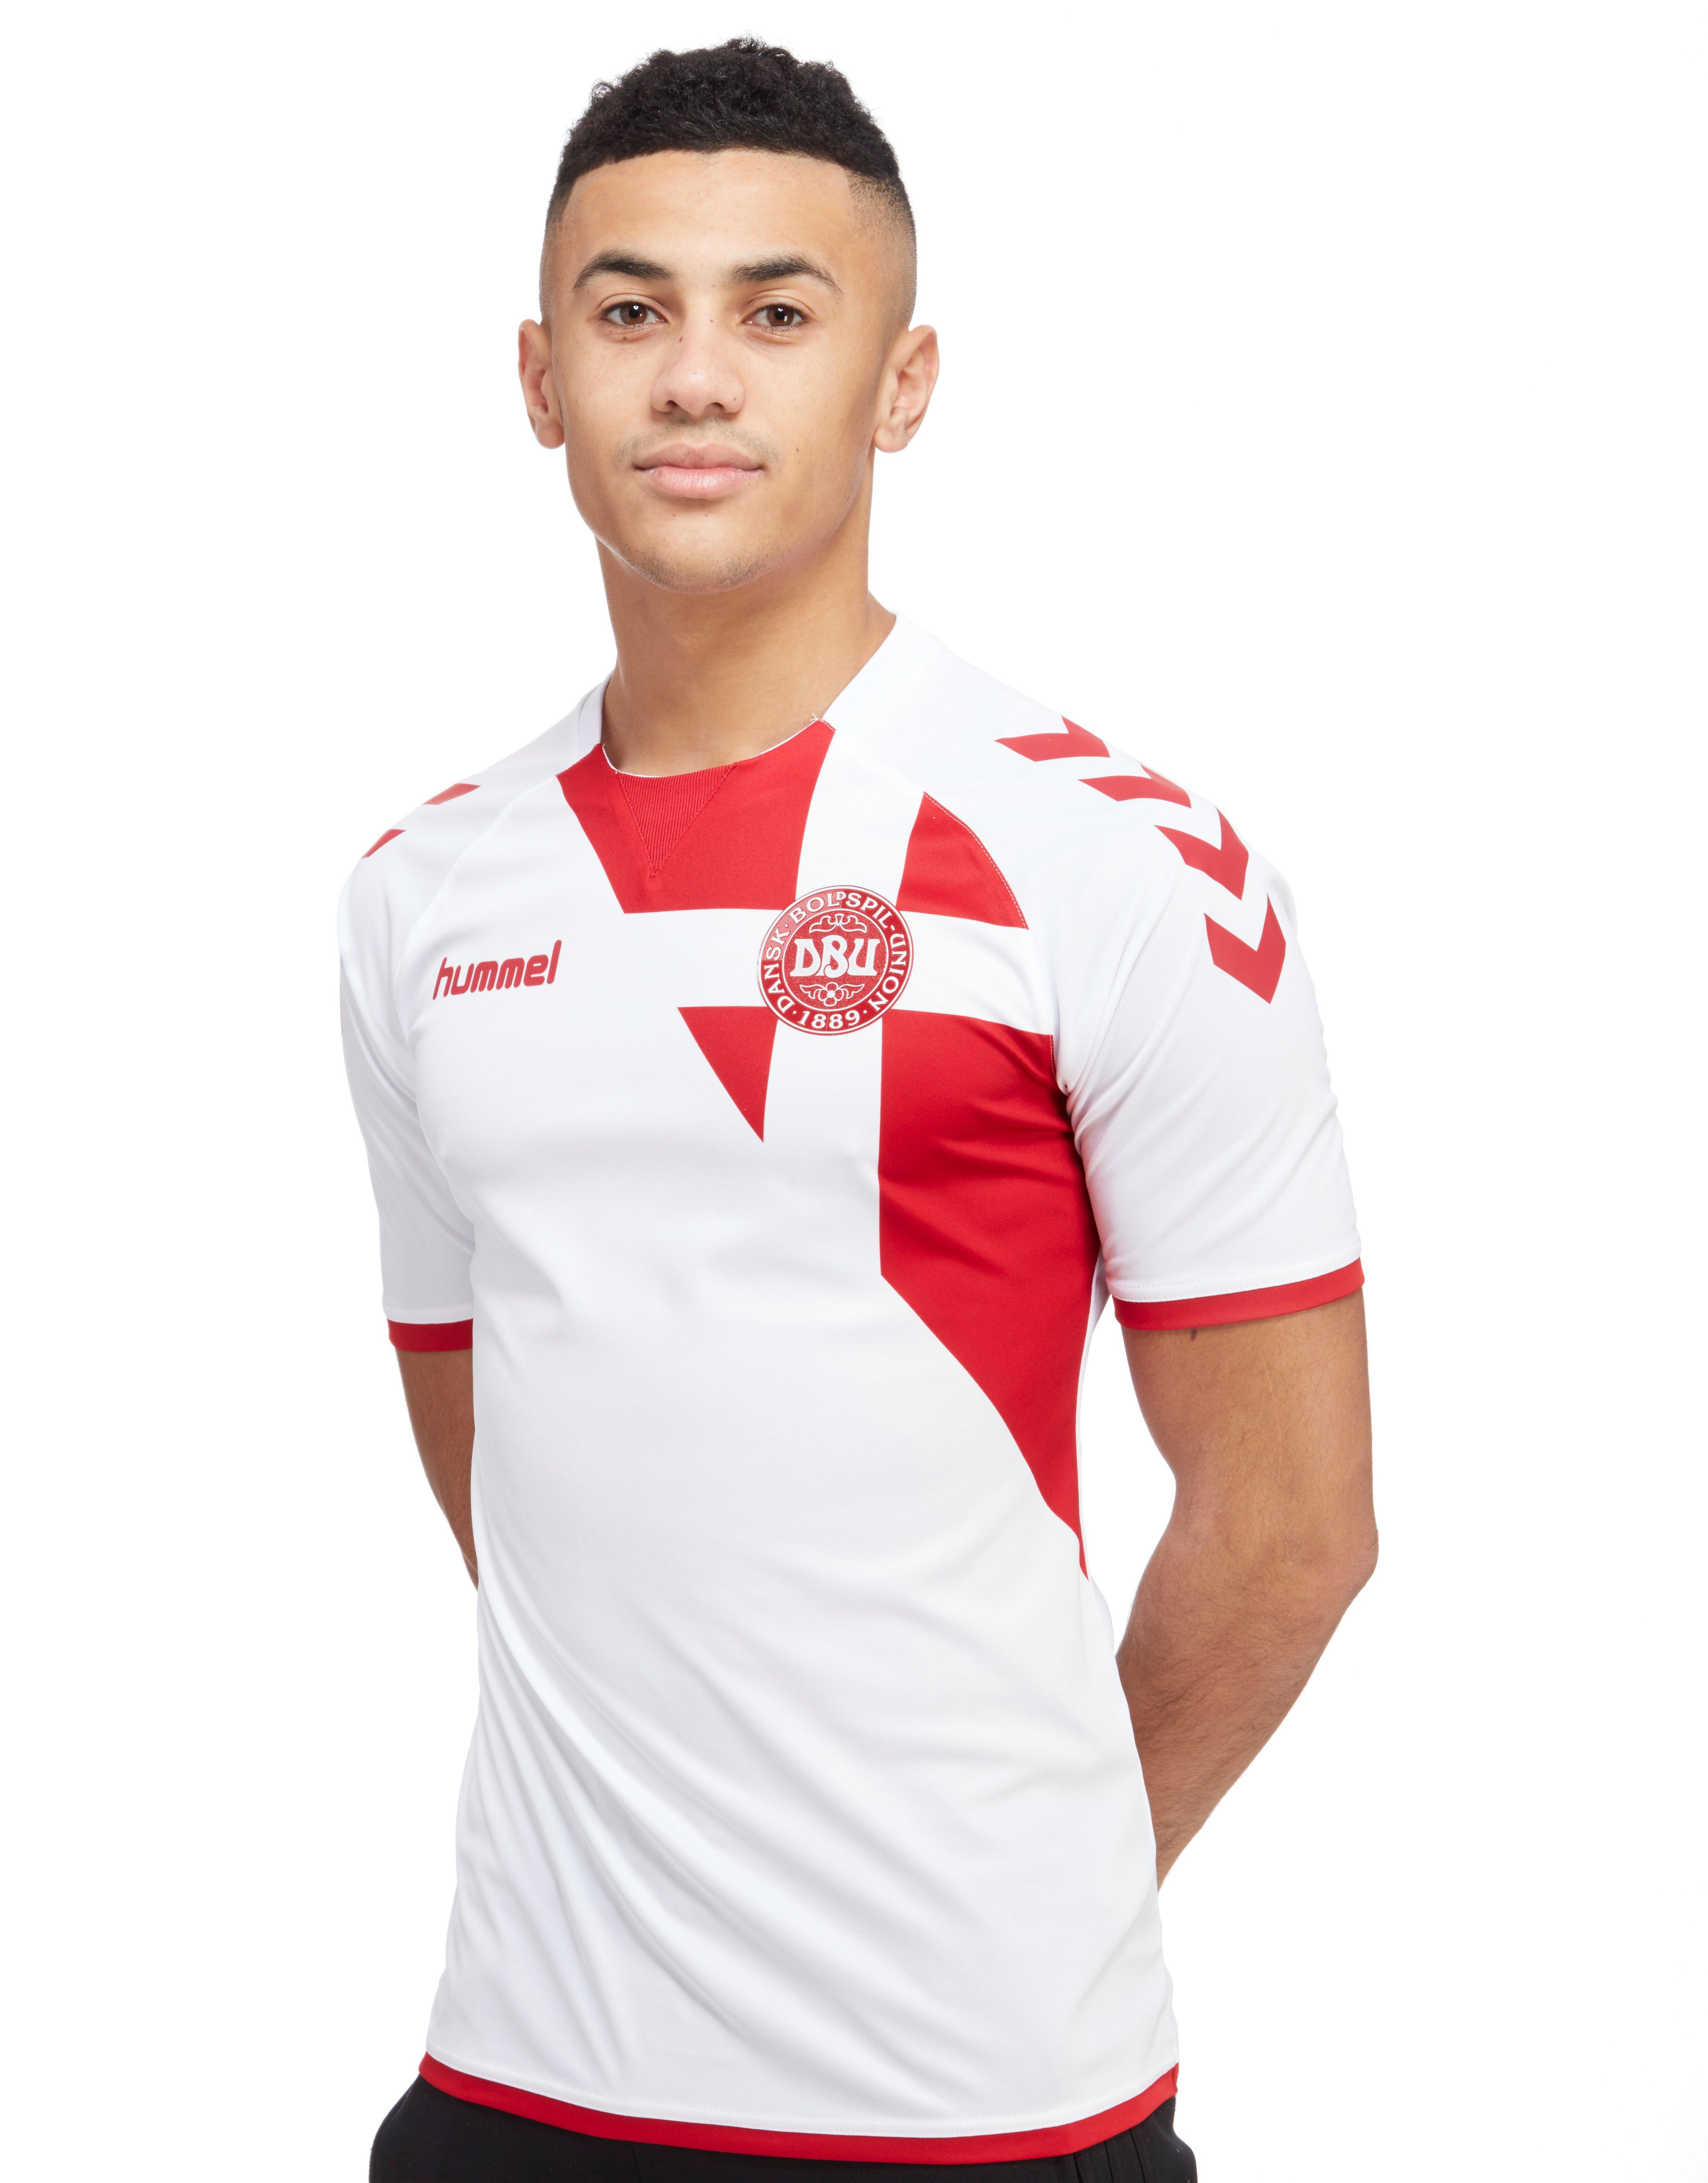 Hummel Synthetic Denmark Away 2016/17 Shirt in White/Red (White) for Men -  Lyst